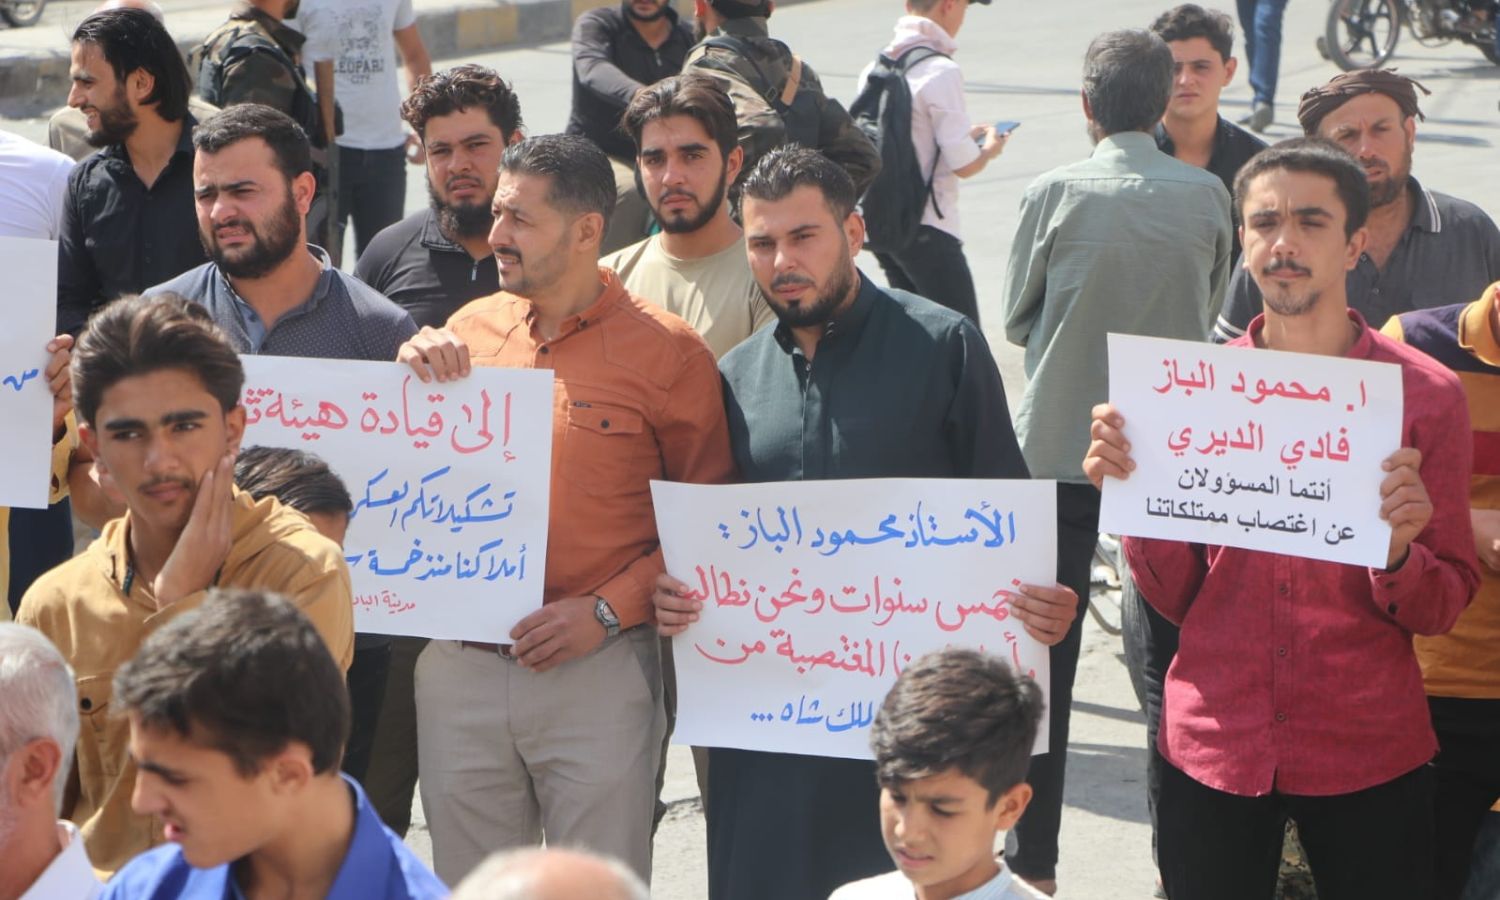 متظاهرون في مدينة الباب بريف حلب الشرقي للمطالبة بإعادة الممتلكات التي يستولي عليها قيادي في فرقة "السلطان ملكشاه"- 23 من أيلول 2022 (أخبار مدينة الباب/ فيس بوك)